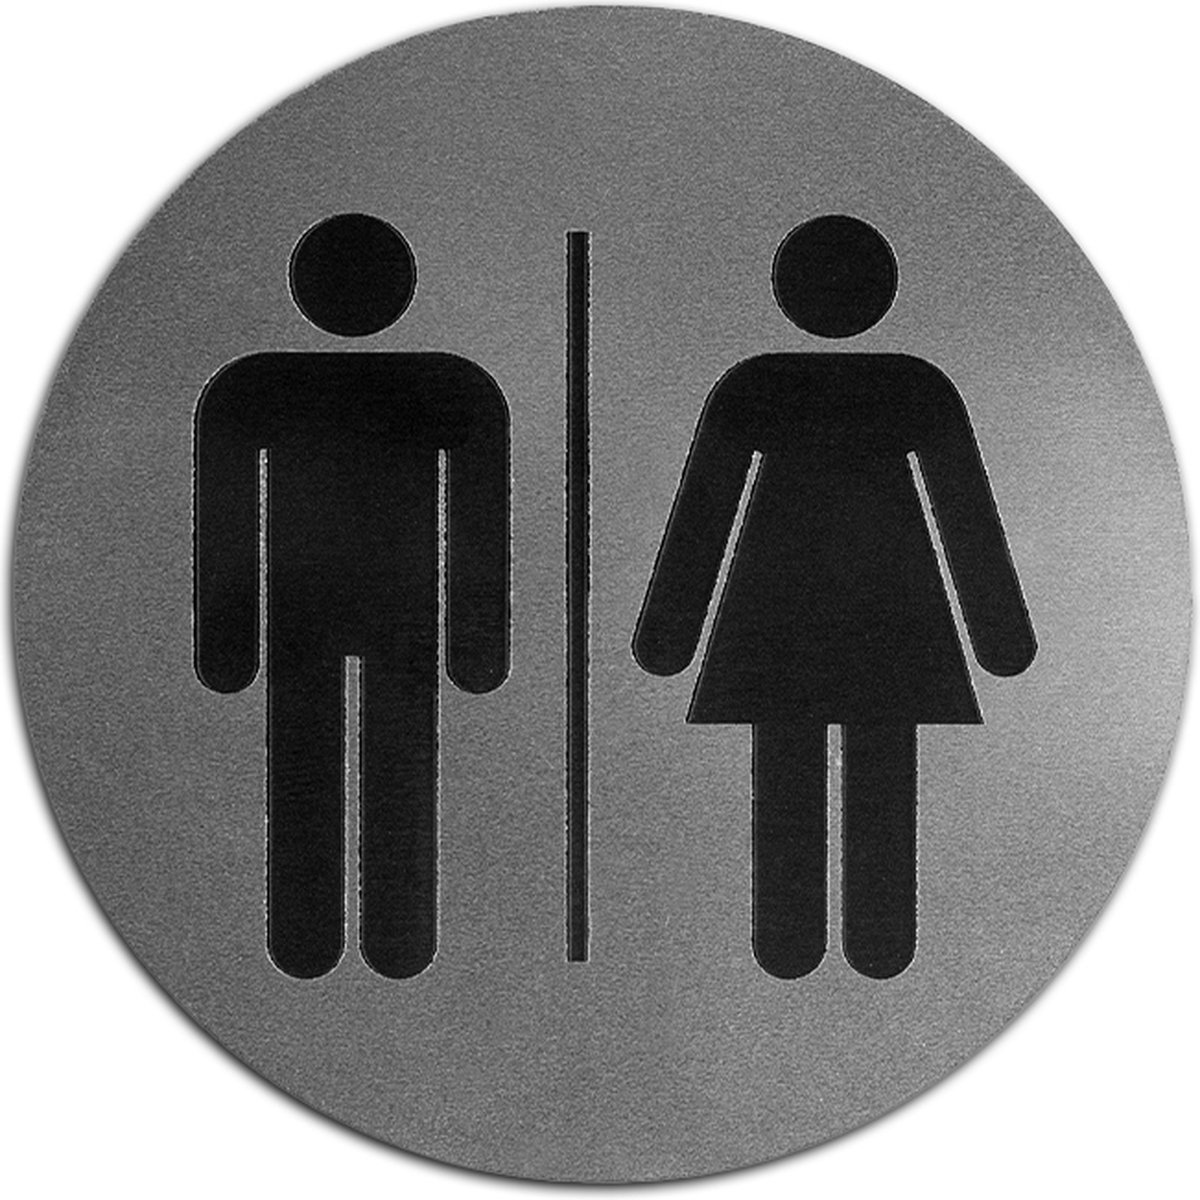 Wc bordje – Man en Vrouw – Rond – Acrylaat - RVS met Zwart – 10 x 10 cm – Toilet bordje – Deurbord – Zelfklevend